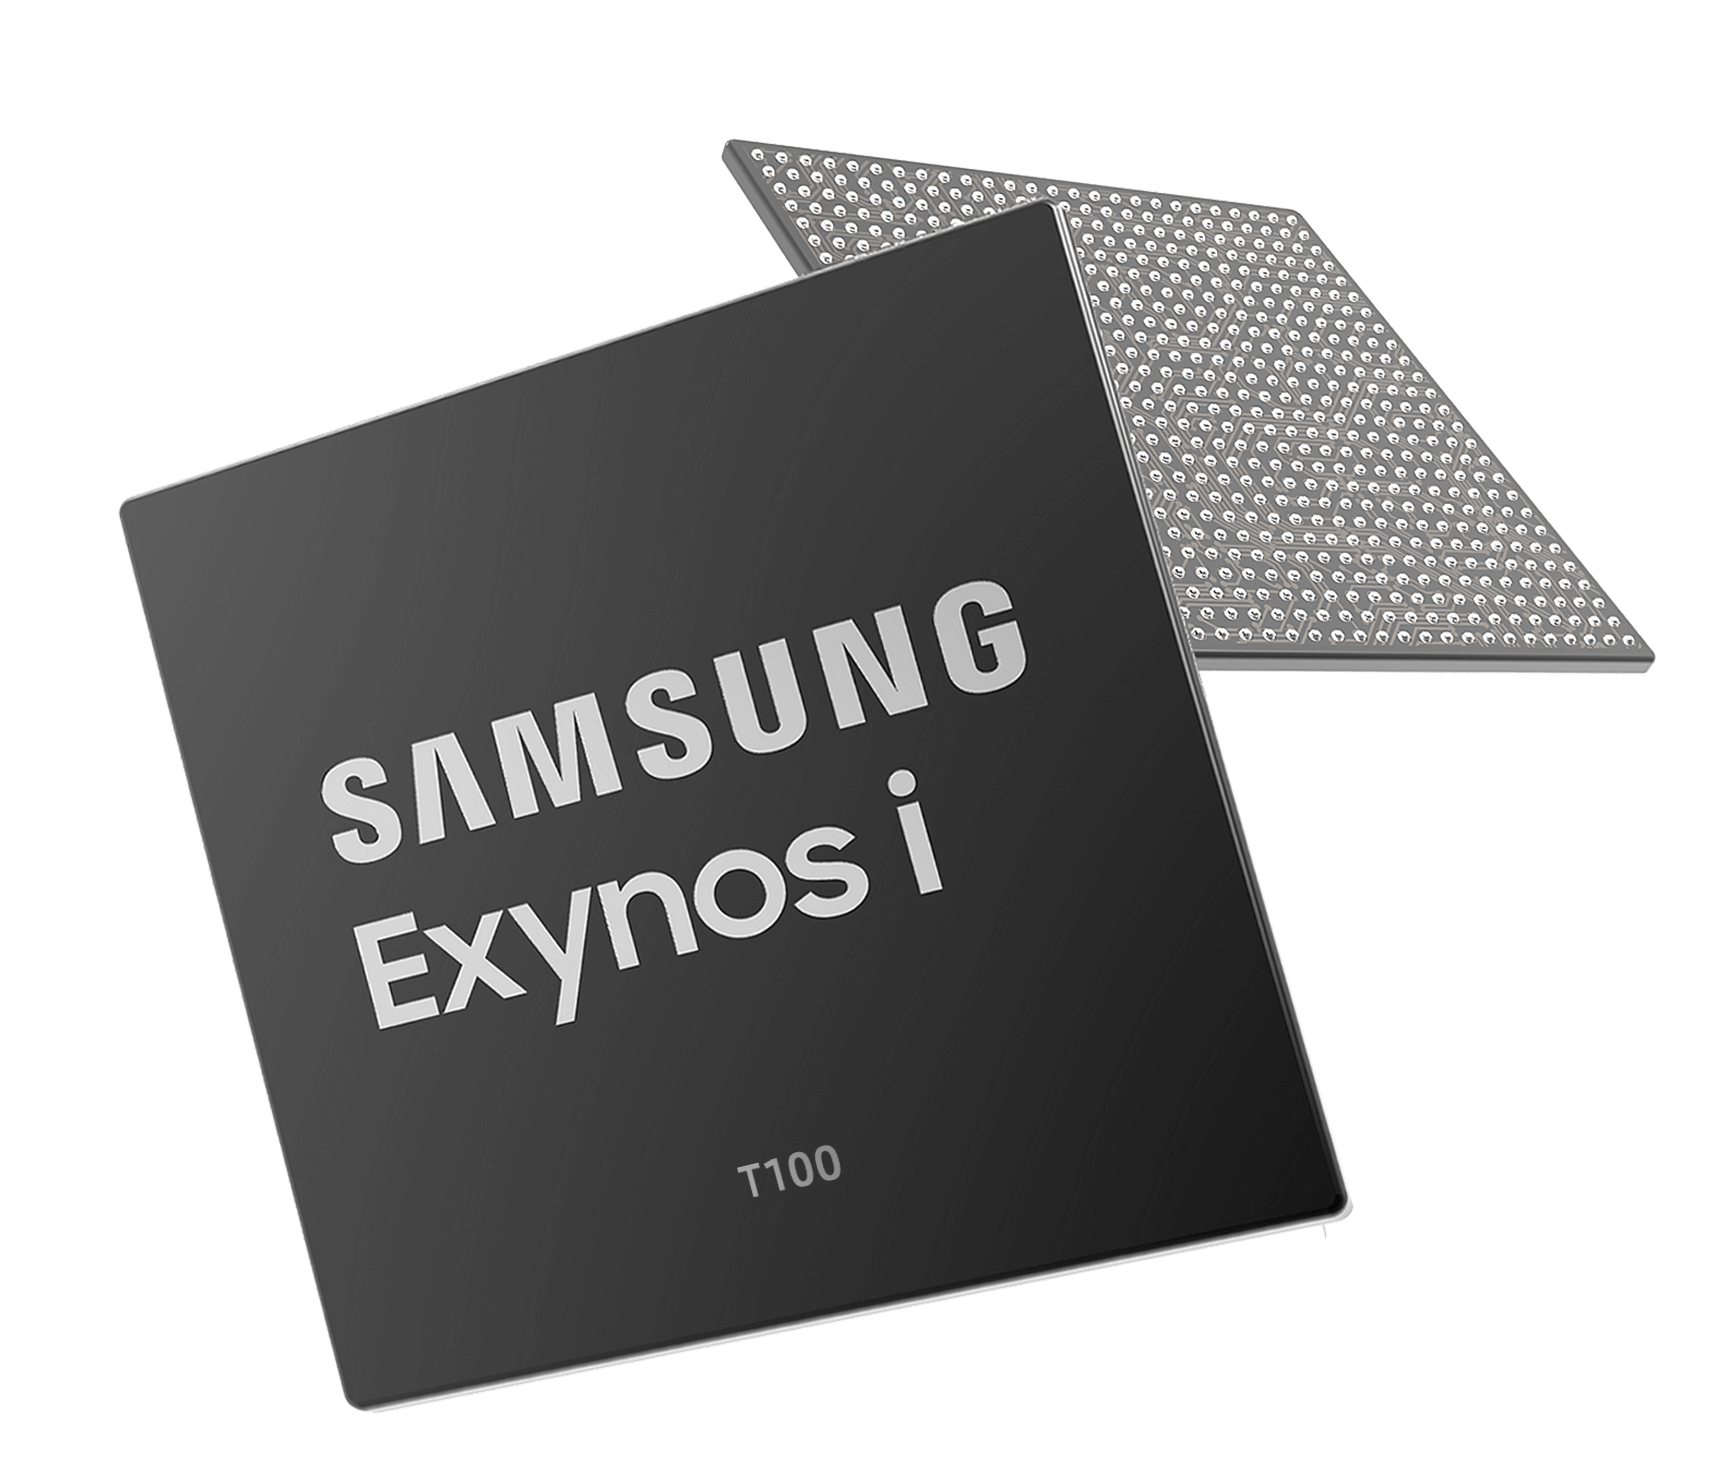 Samsung Exynos i T100 